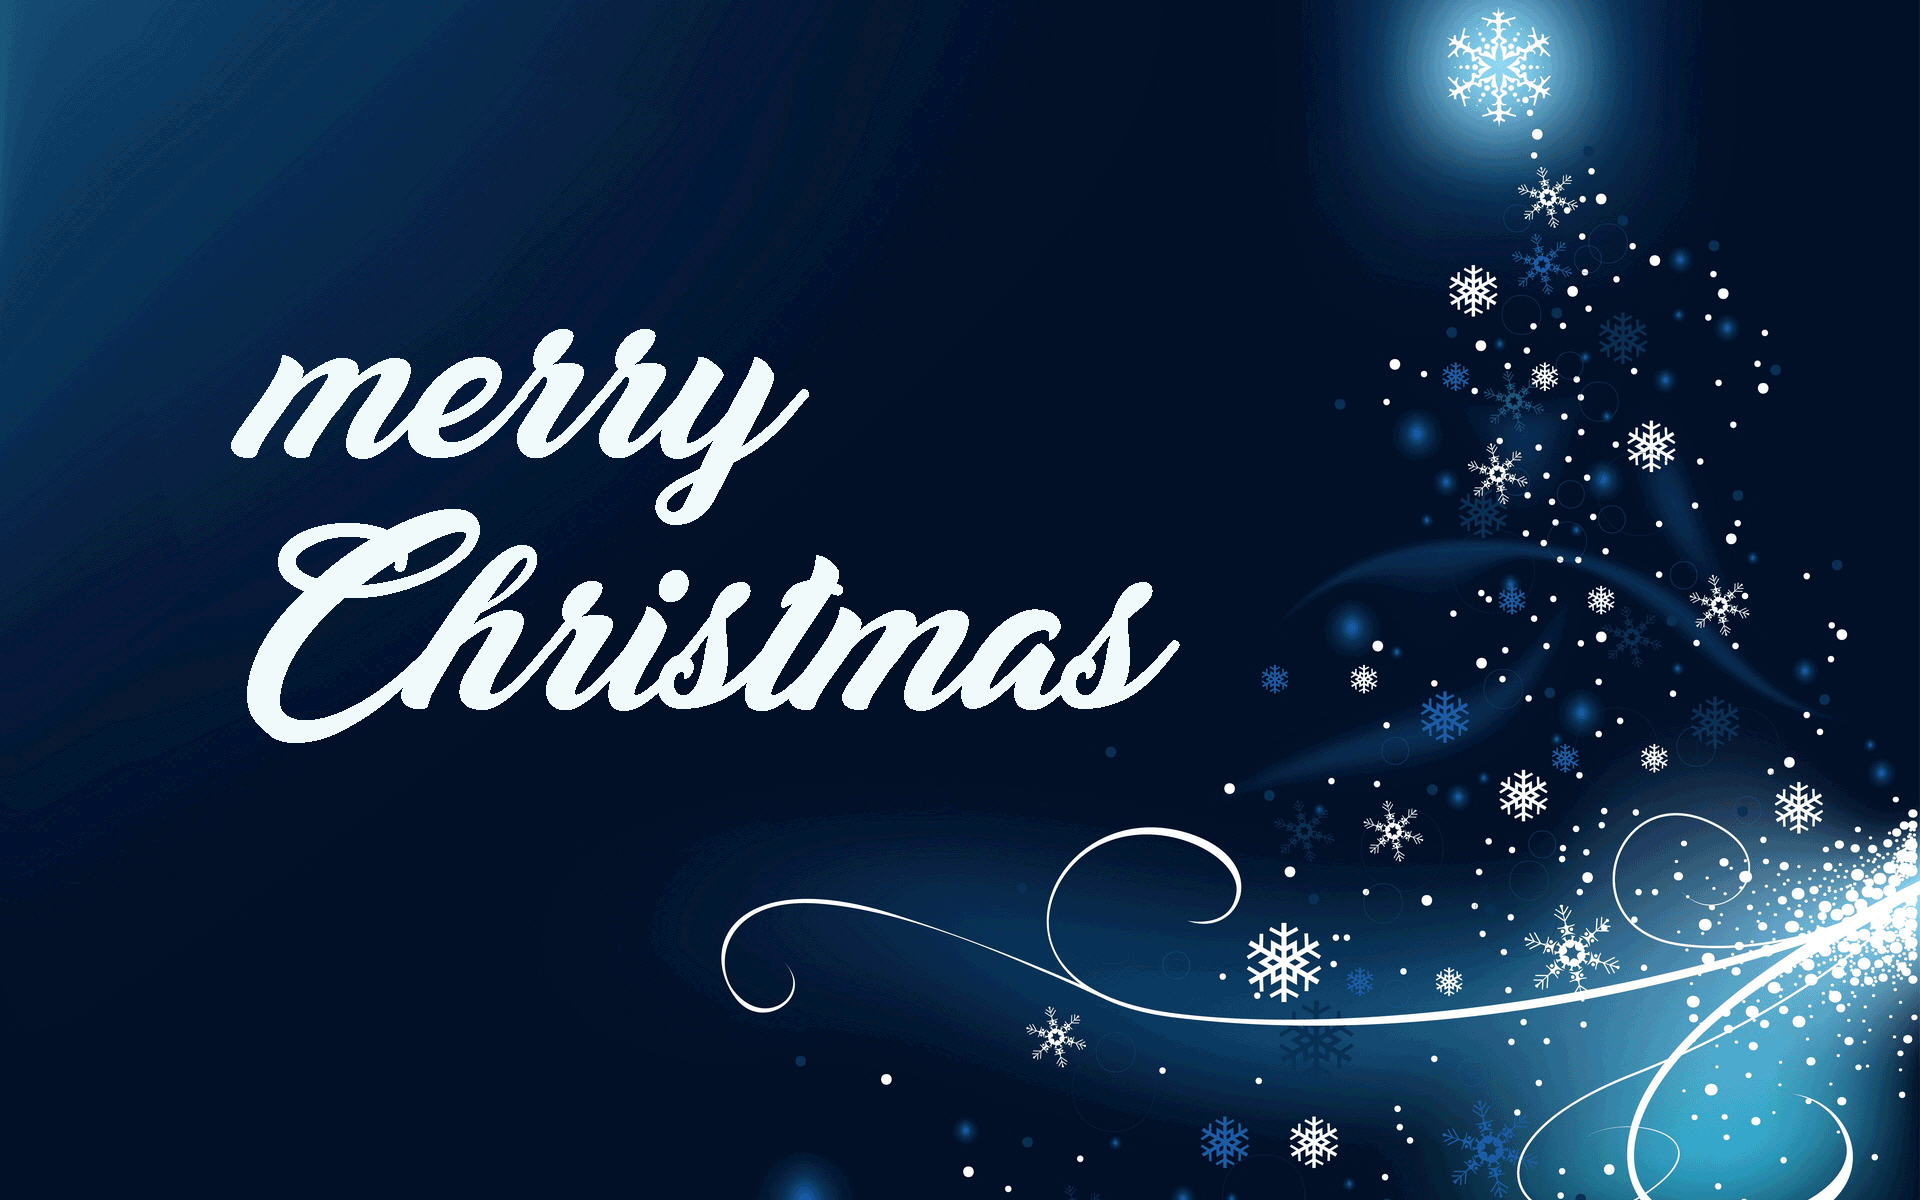 Życzenia Świąteczne 2019 - Pogaduszki wszelakie - The Company Community